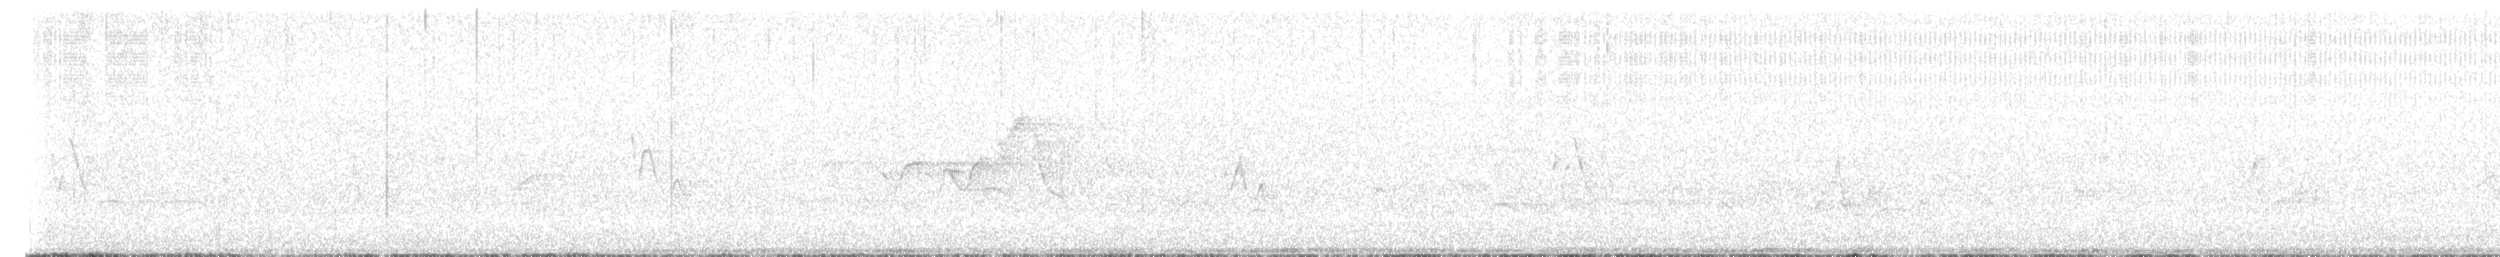 Paruline à capuchon - ML620170405